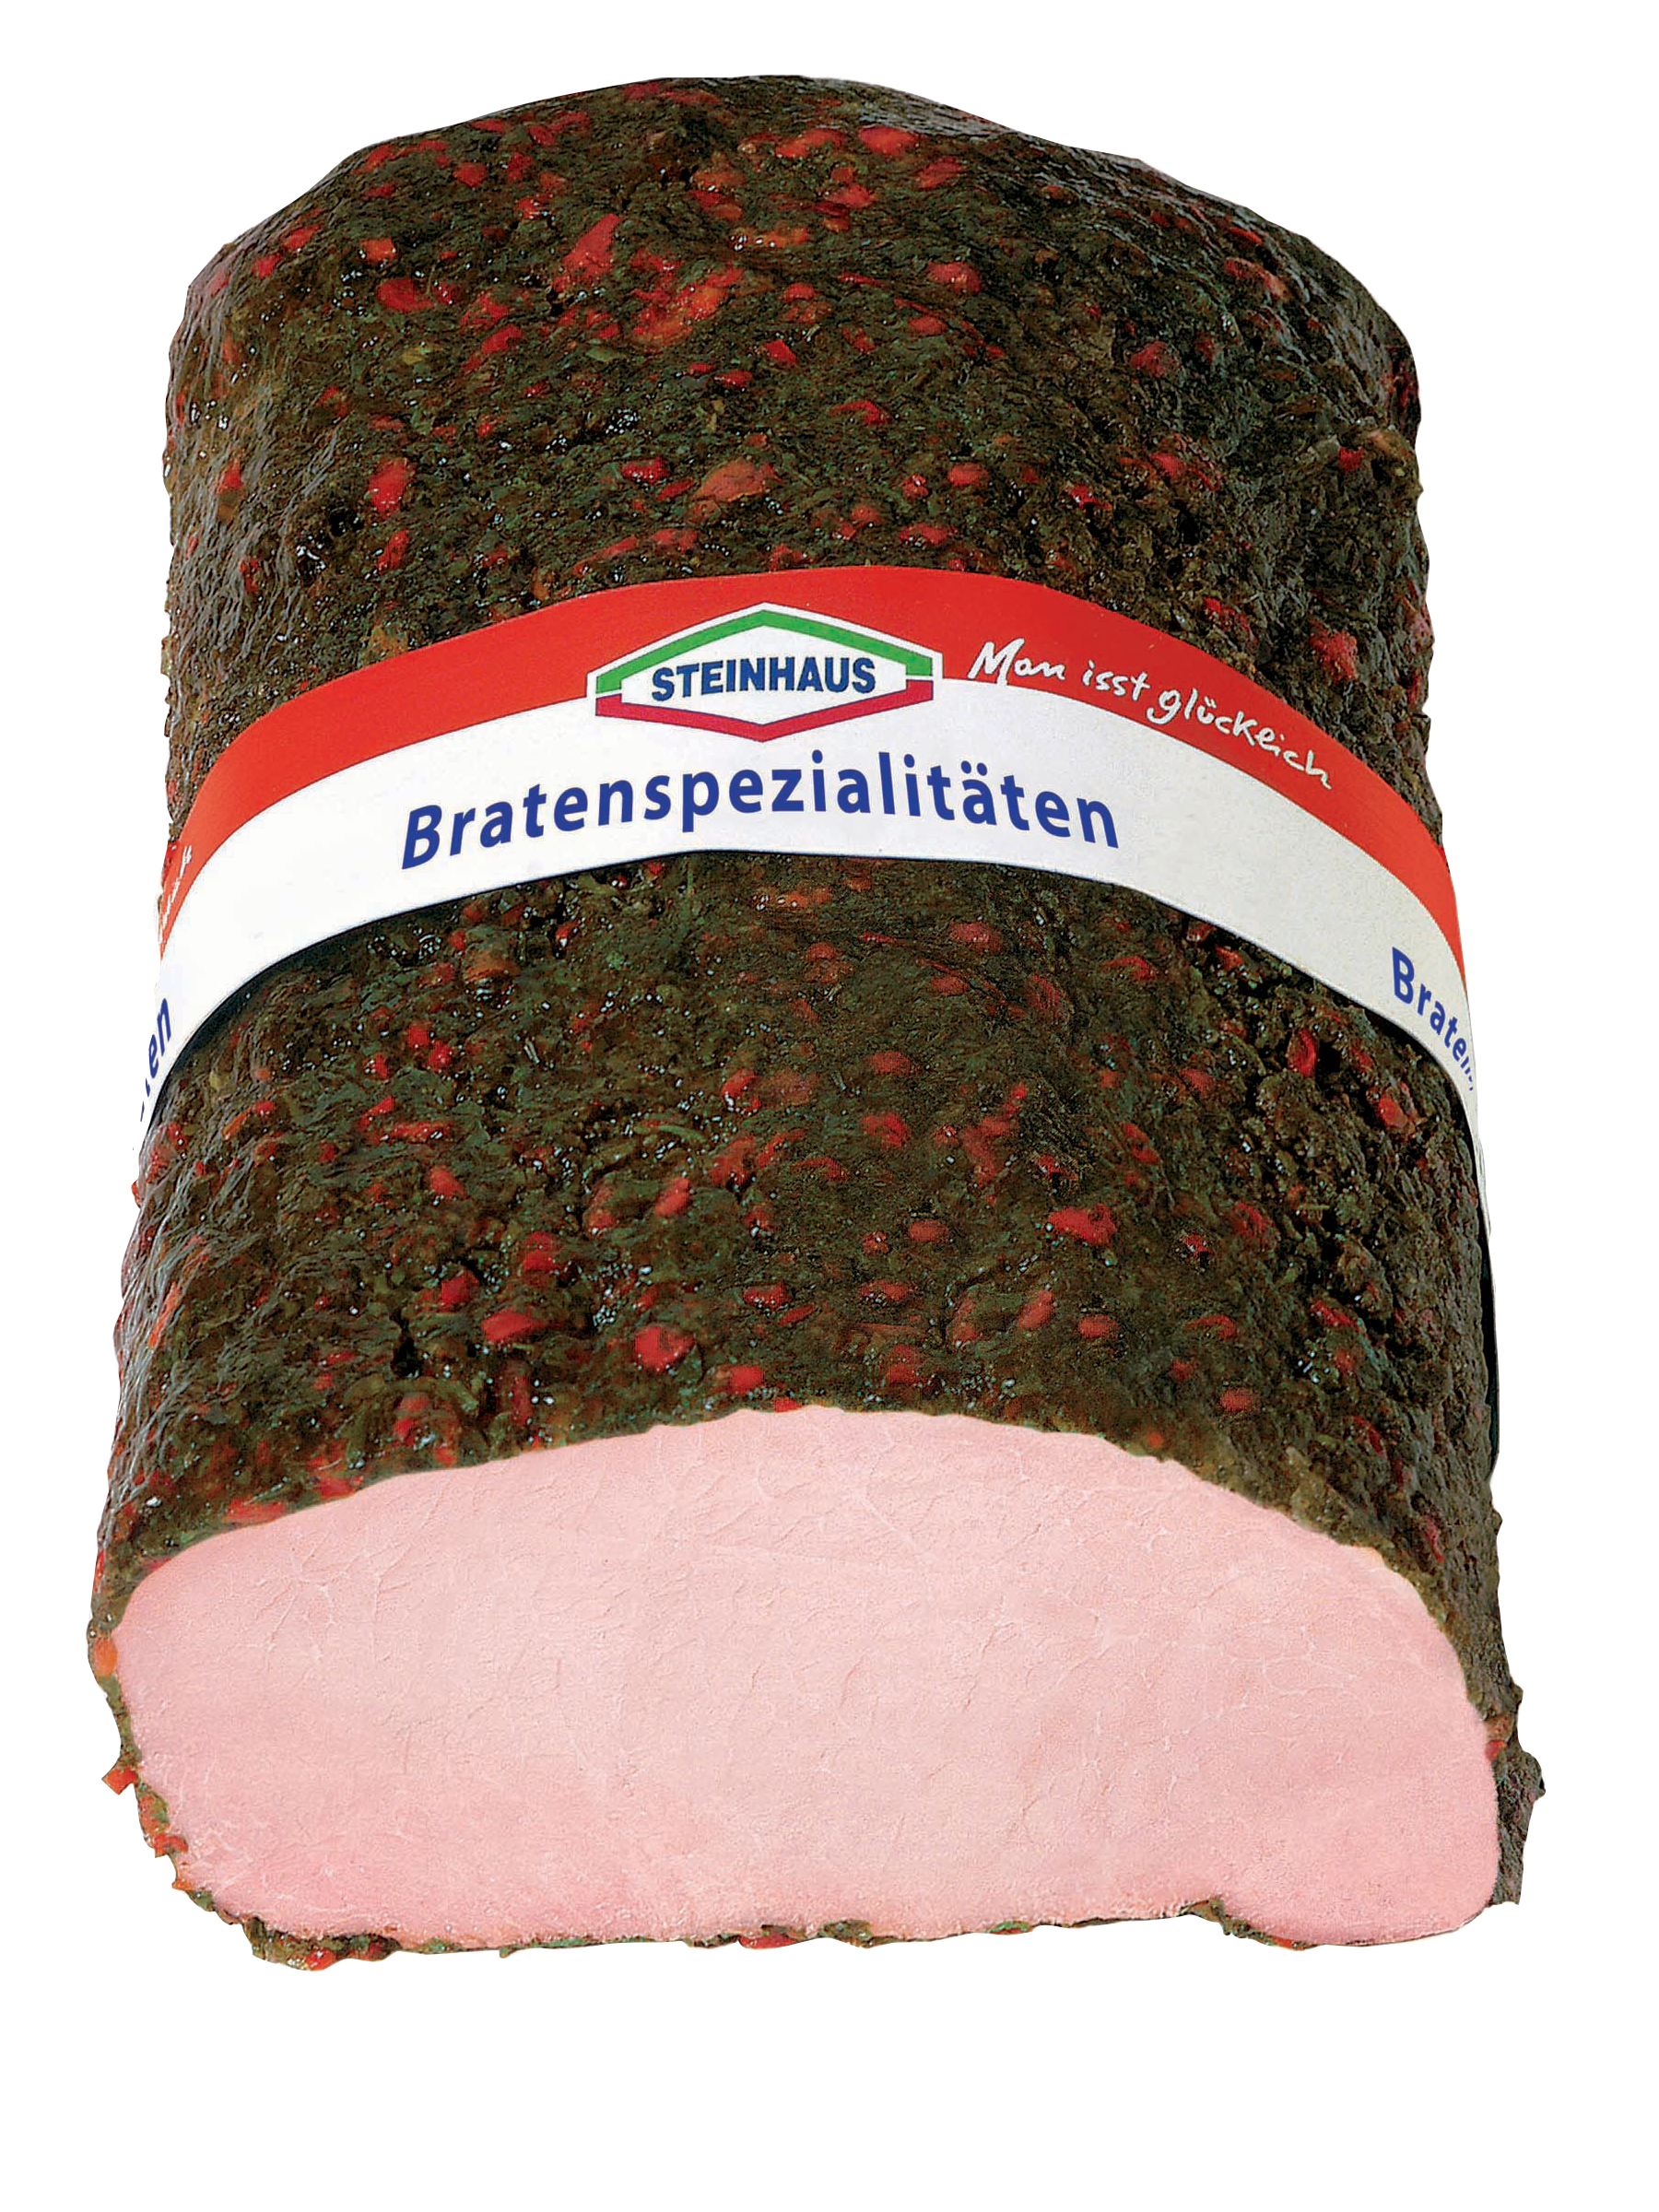 Kräuter Kasseler BD – Magere Kasseler-Spezialität aus dem Schweinerücken, würzig ummantelt mit erlesenen Kräutern für Abwechslung auf dem Brot – frisch aufgeschnitten an der Bedienungstheke.